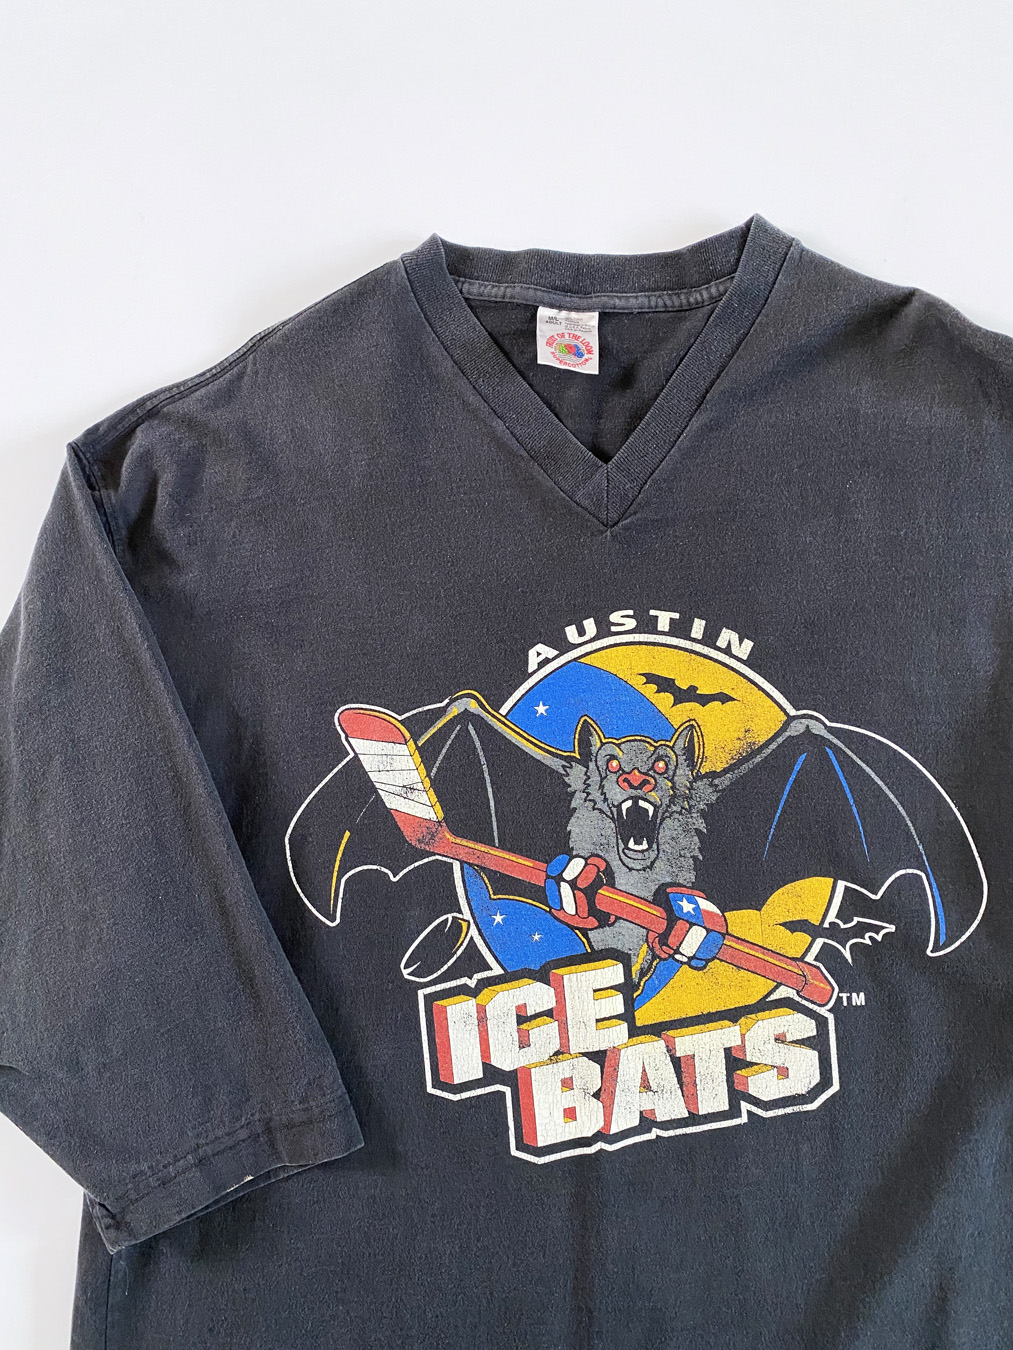 A u s t i n Ice Bats Kids T-Shirt for Sale by RedenoL902